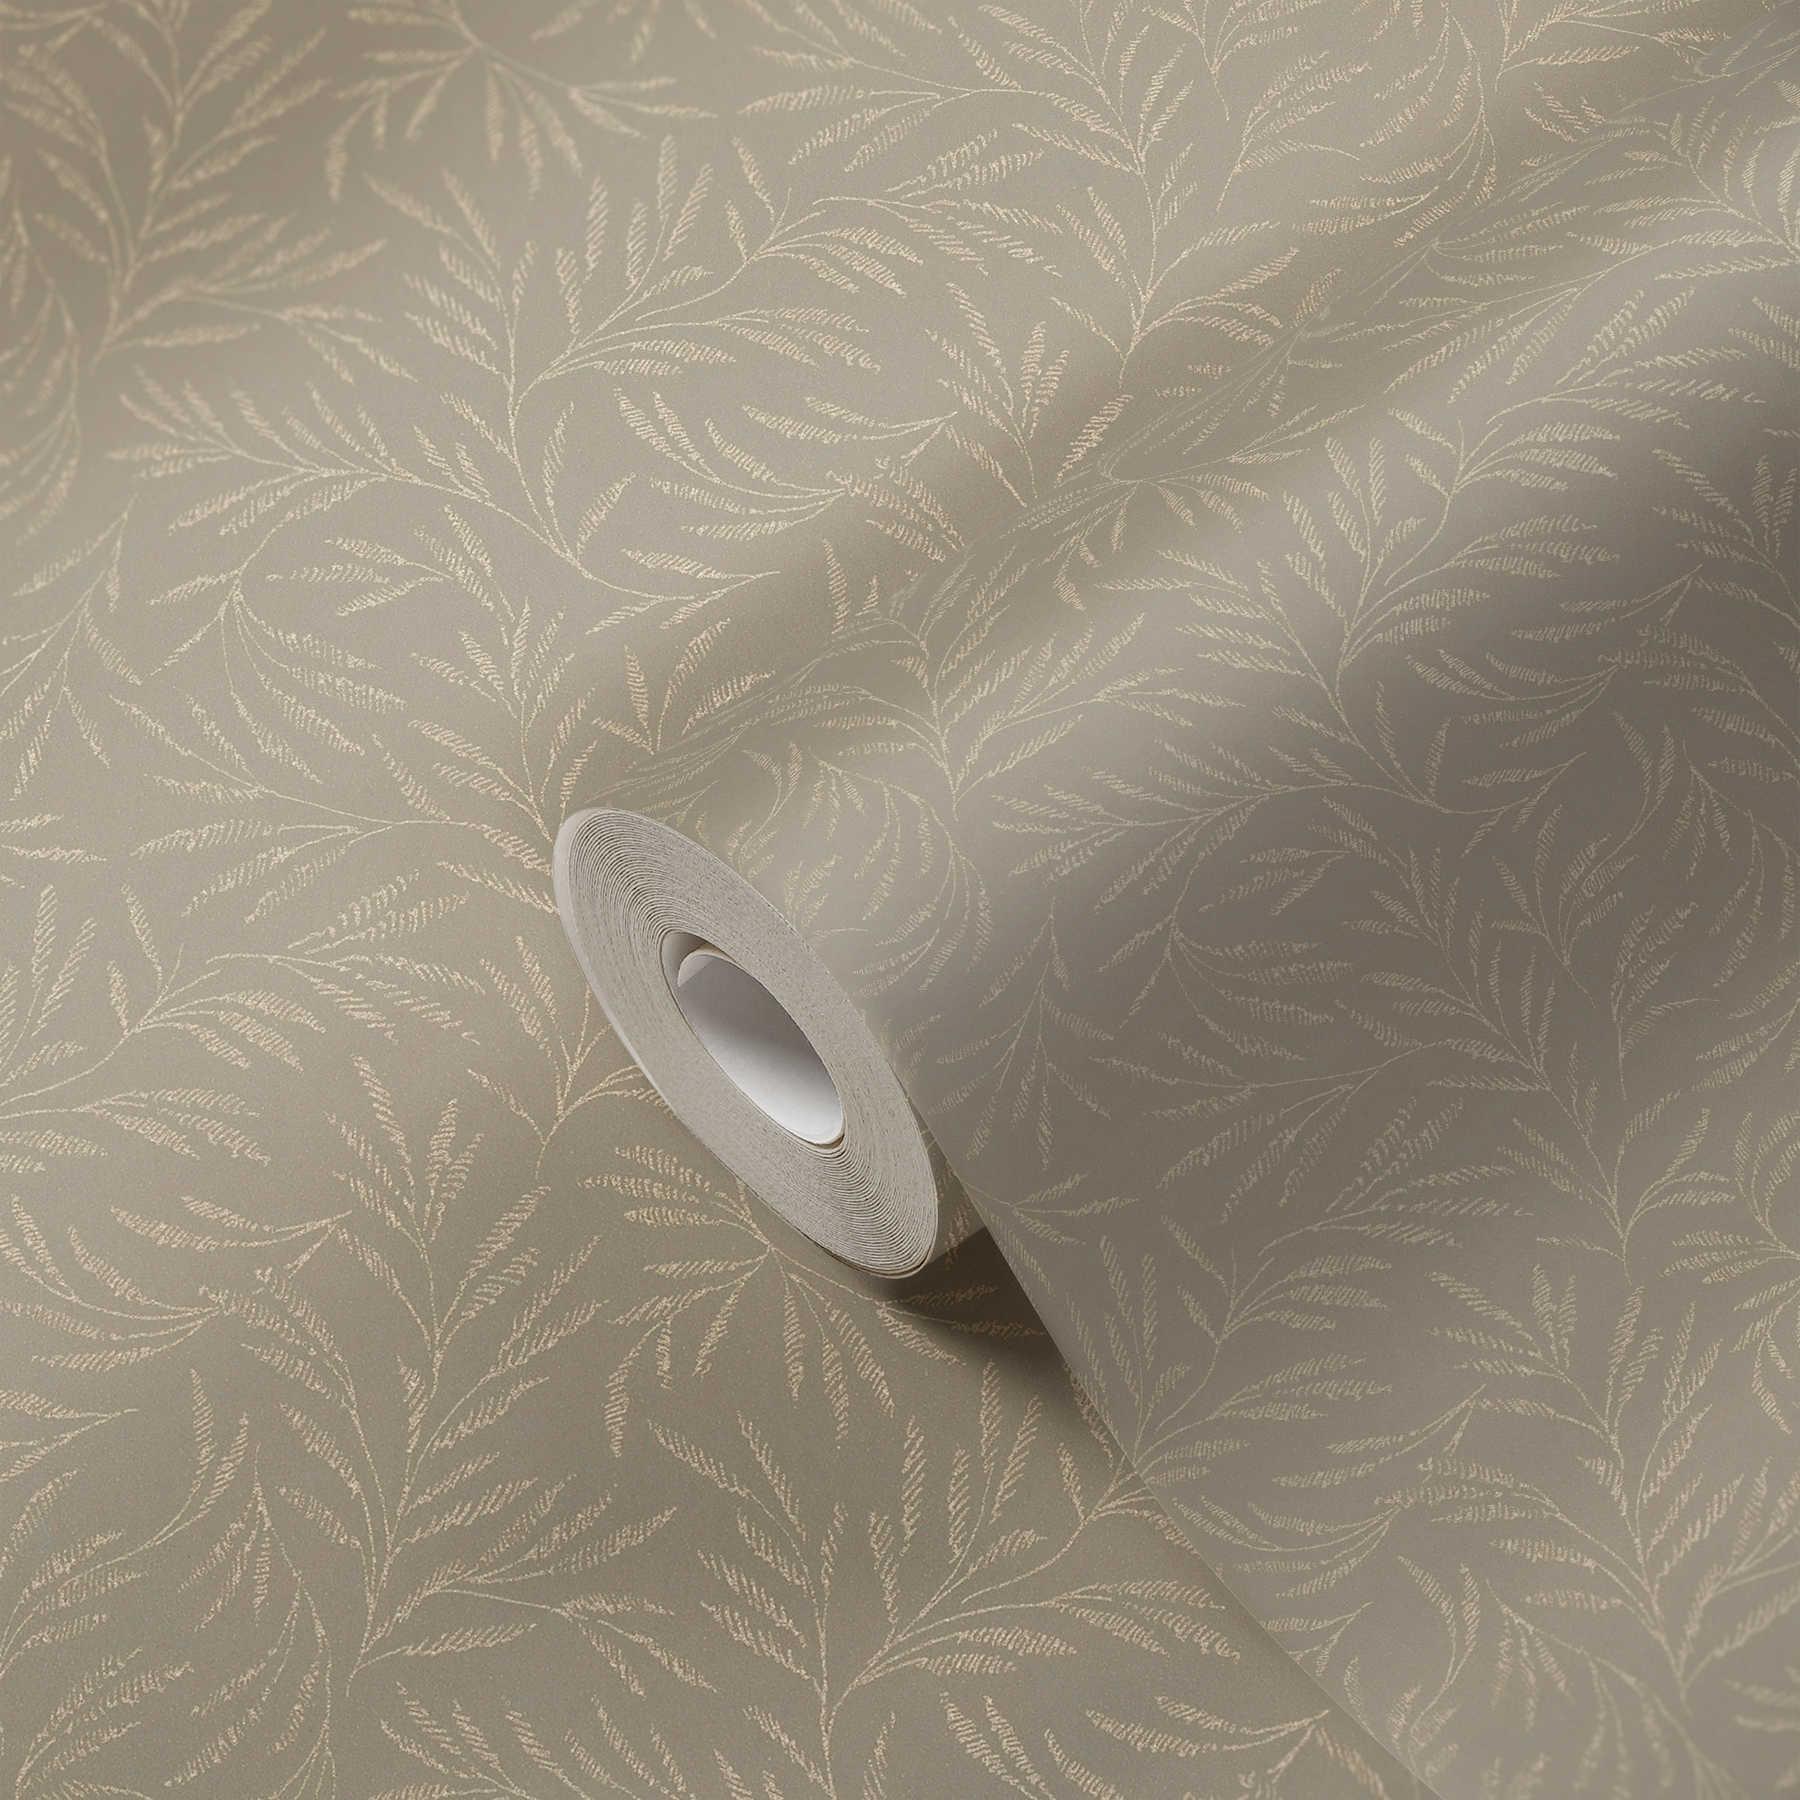             Pattern wallpaper metallic leaves vines - brown, grey
        